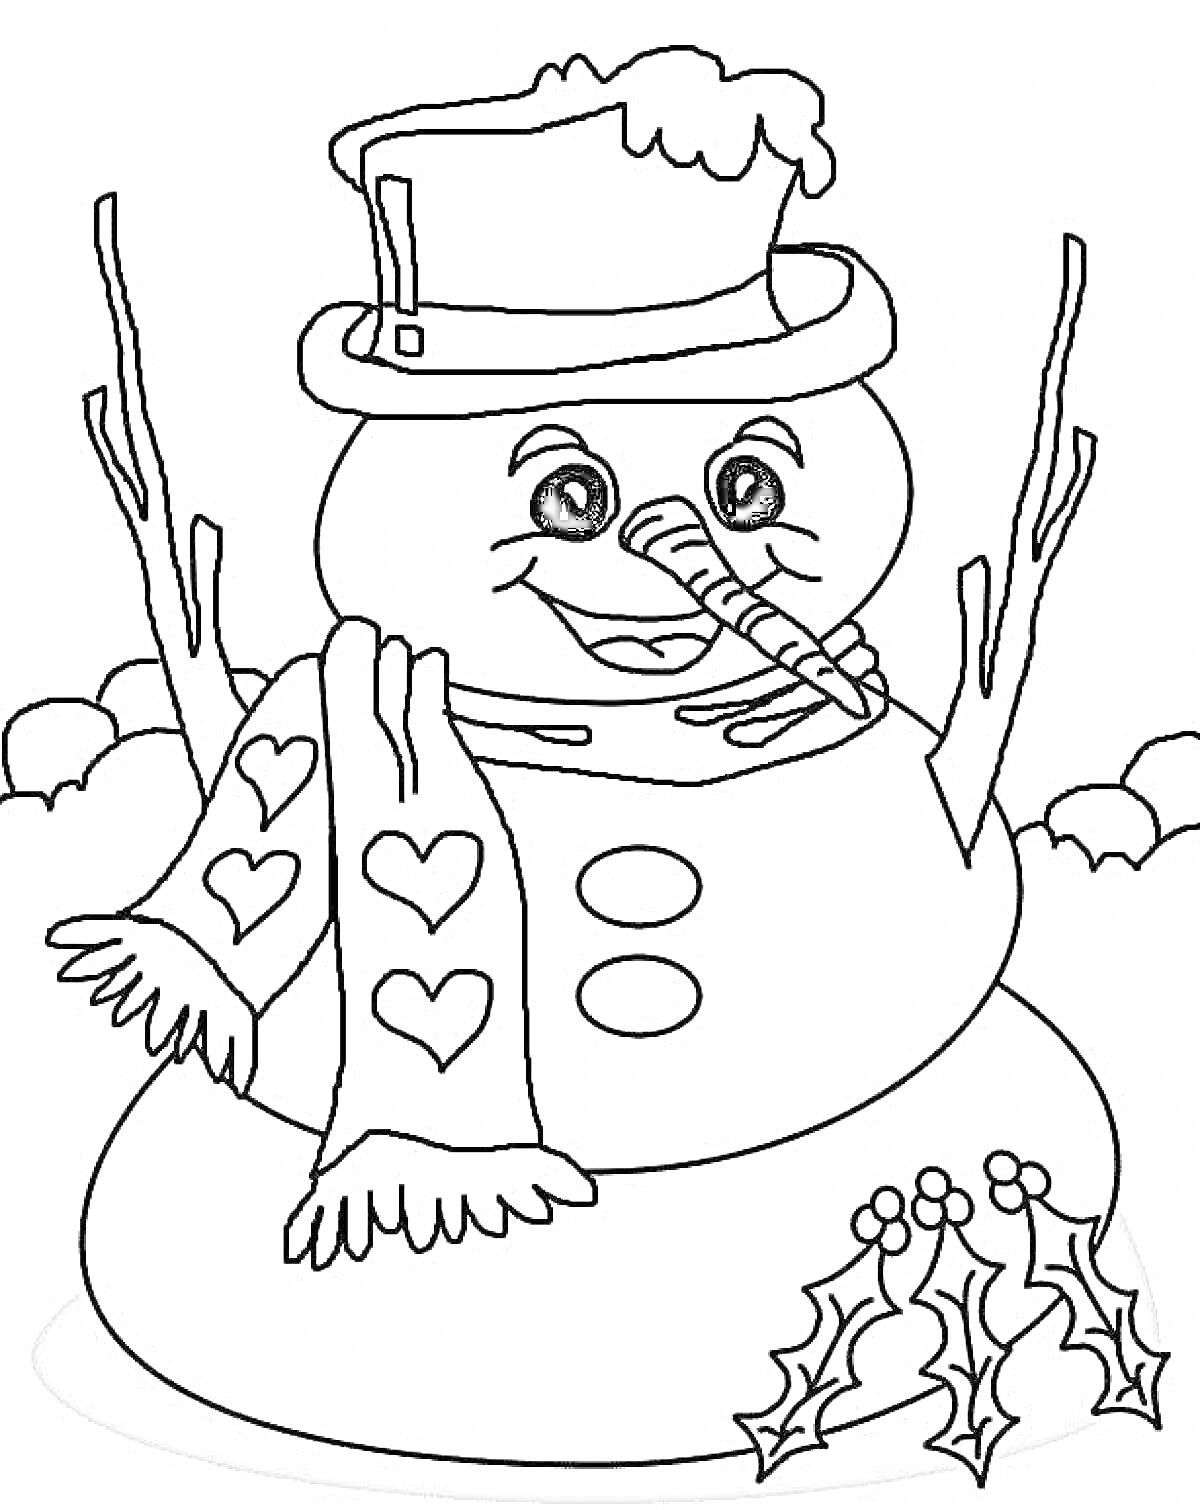 Снеговик с шляпой, шарфом, морковным носом, ветками в качестве рук и веточками остролиста